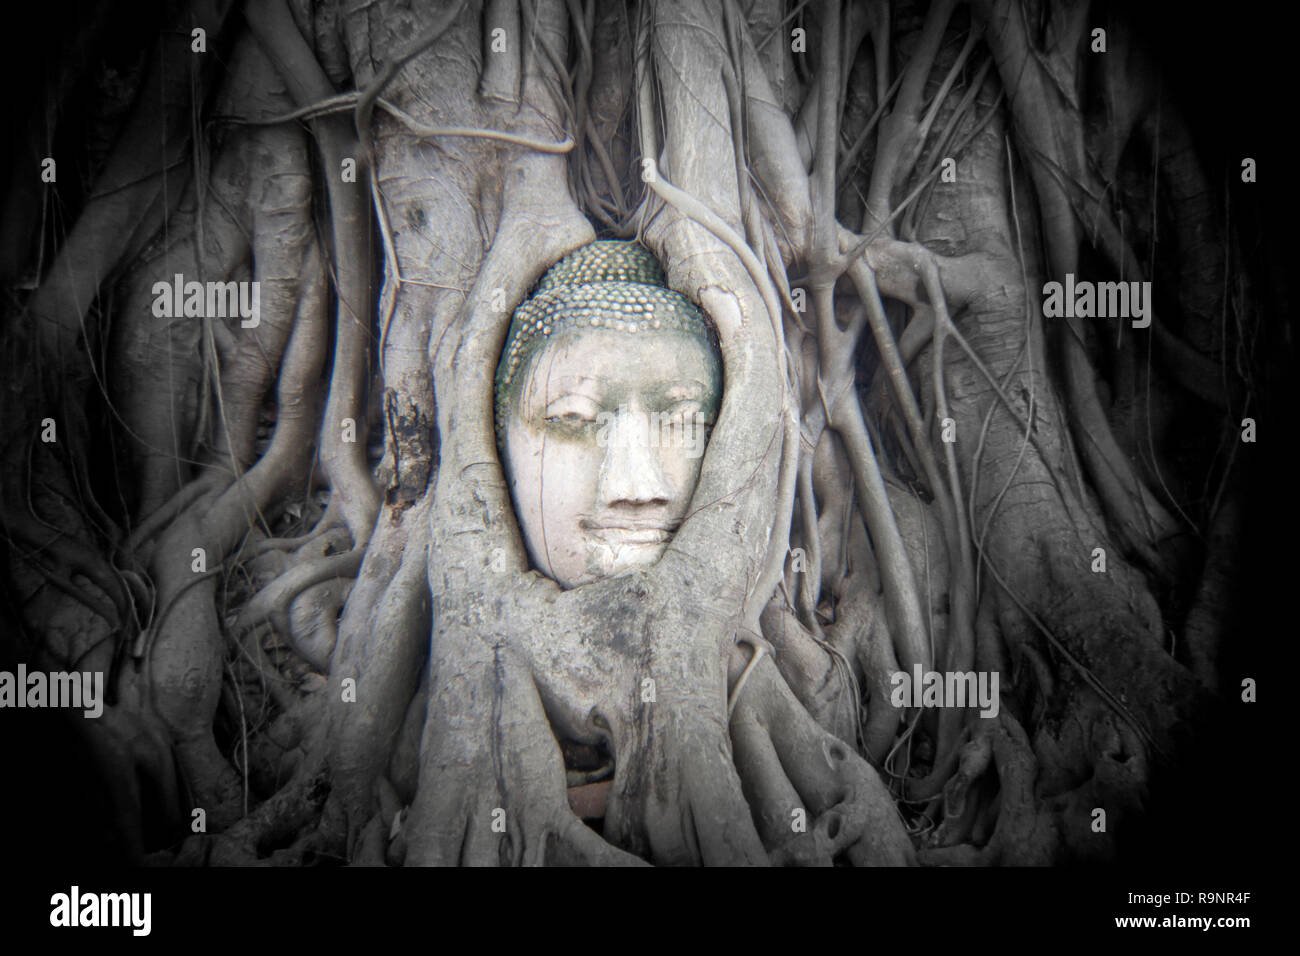 LB00099-00...THAÏLANDE - Tête de bouddha entrelacées dans les racines des arbres à Wat Maha That, Ayutthaya. Holga image. Banque D'Images